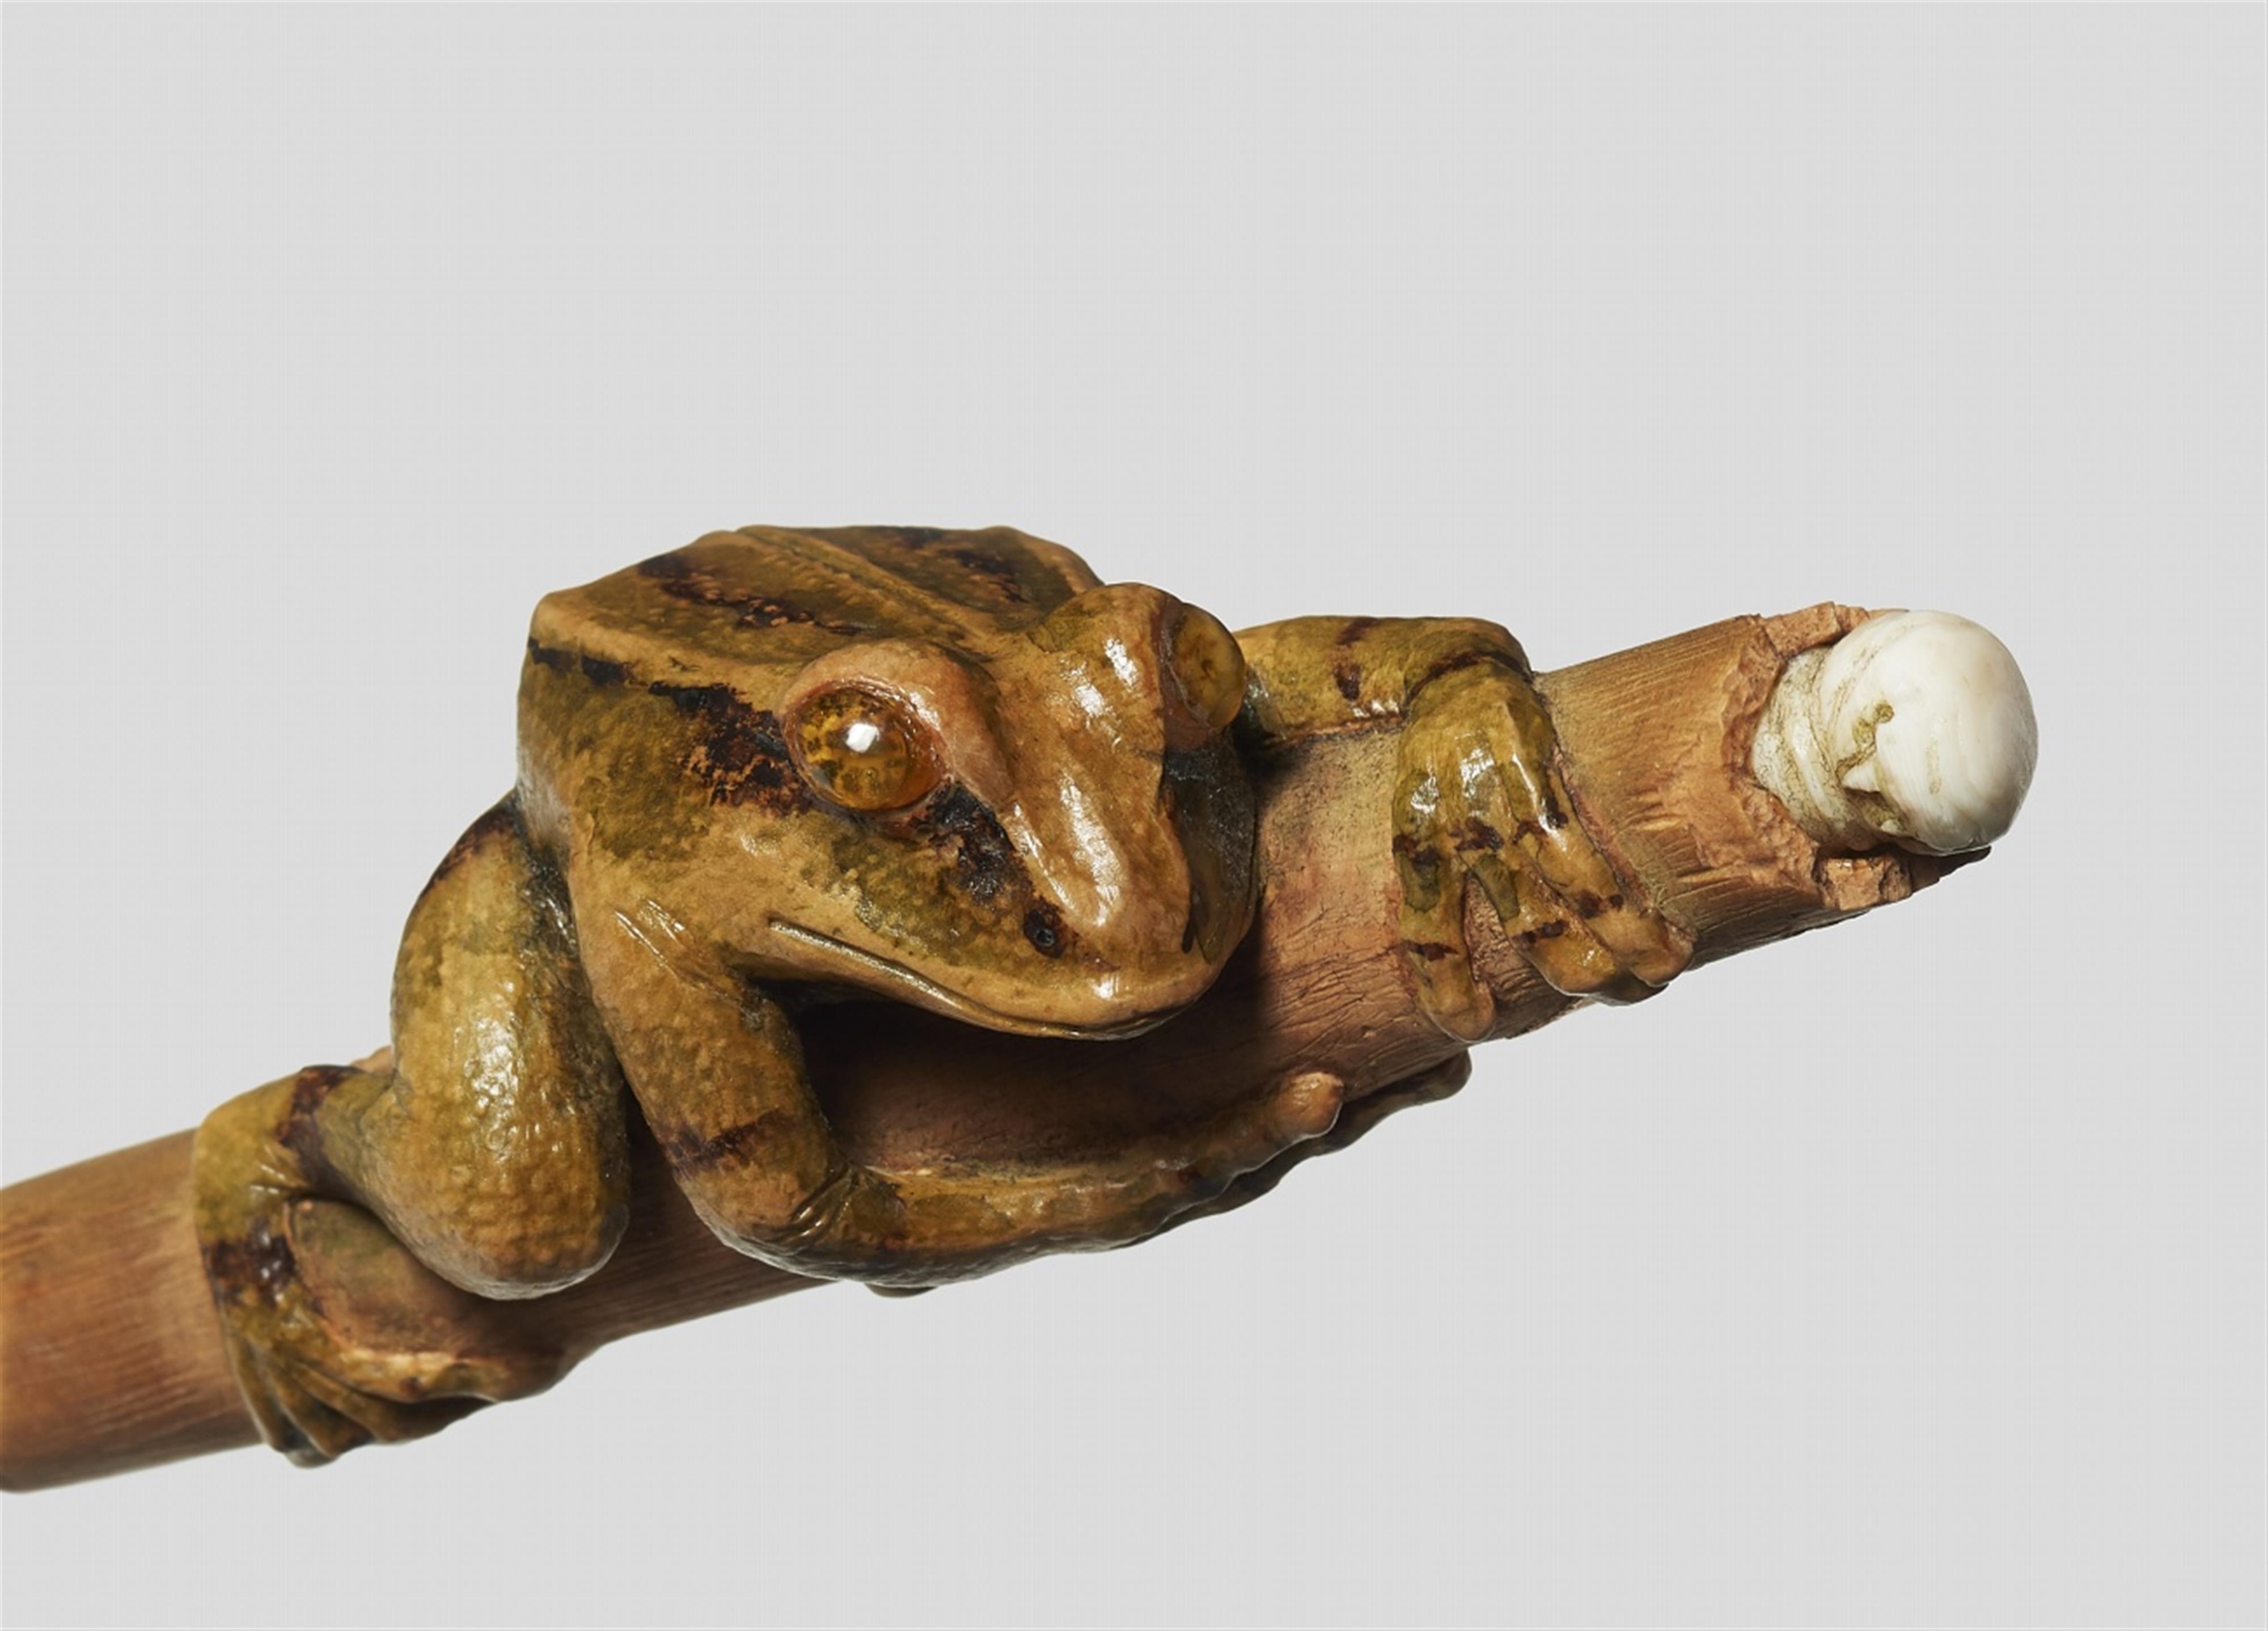 Grenouille sur un vieux morceau de bambou / A frog on an old bamboo piece. Yann Christophe Lemaire. 2006 - image-4